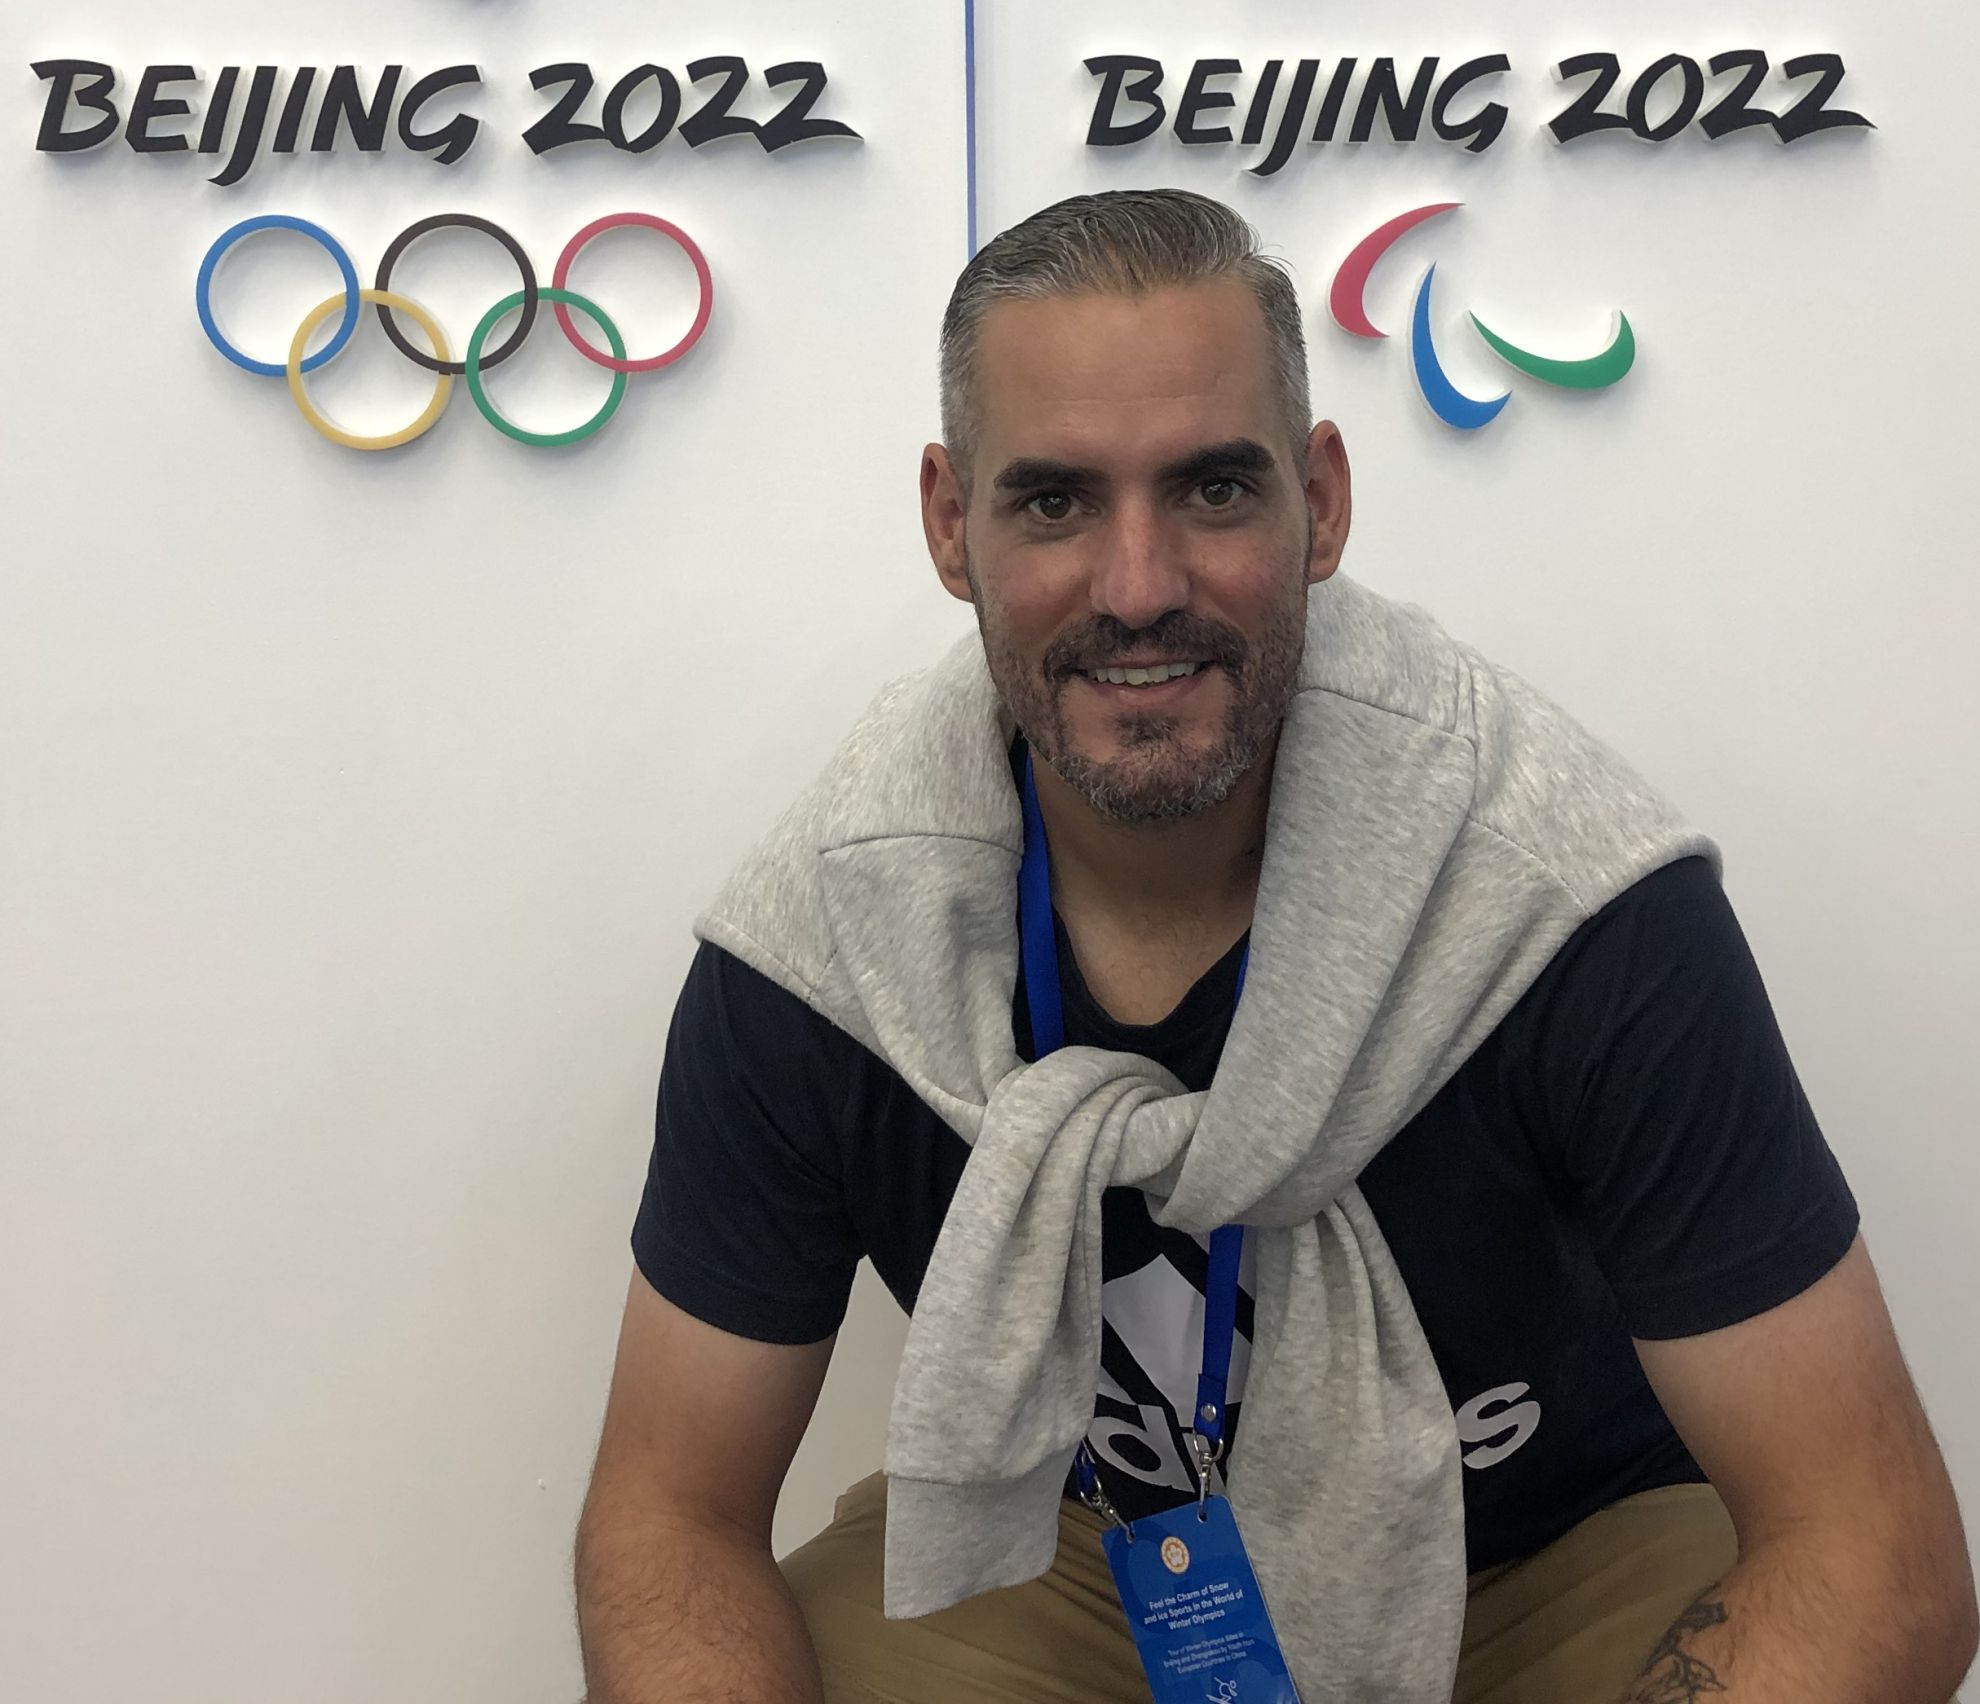 "Las instalaciones de los Juegos de Pekín 2022 son fantásticas e impresionantes"